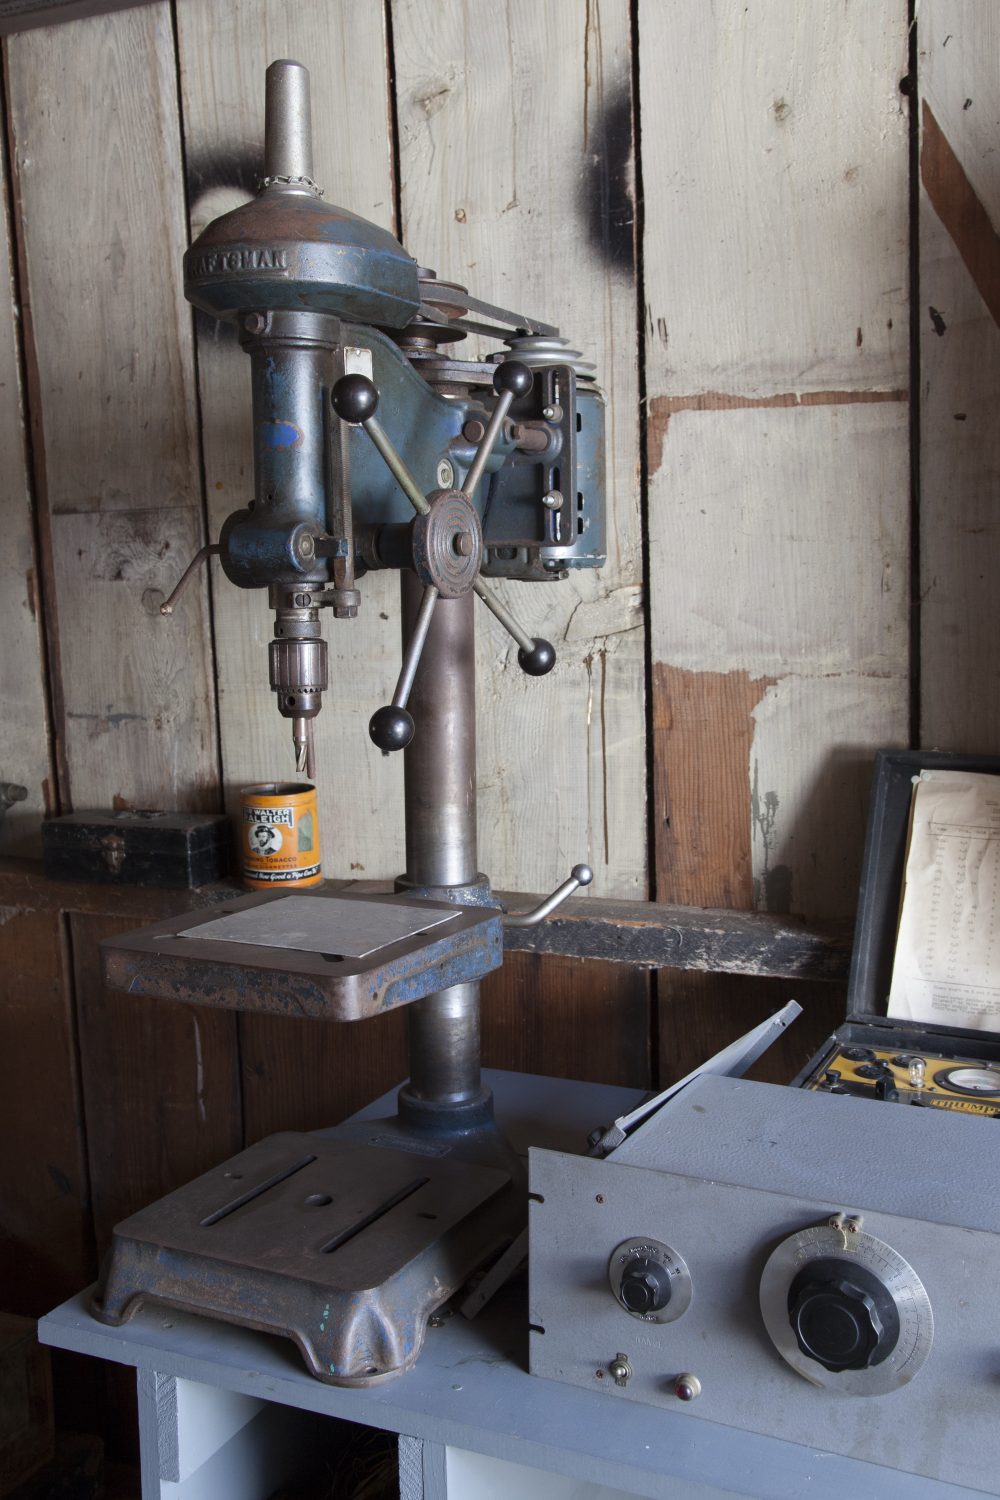 Sears Craftsman drill press in the restored Hewlett-Packard garage.